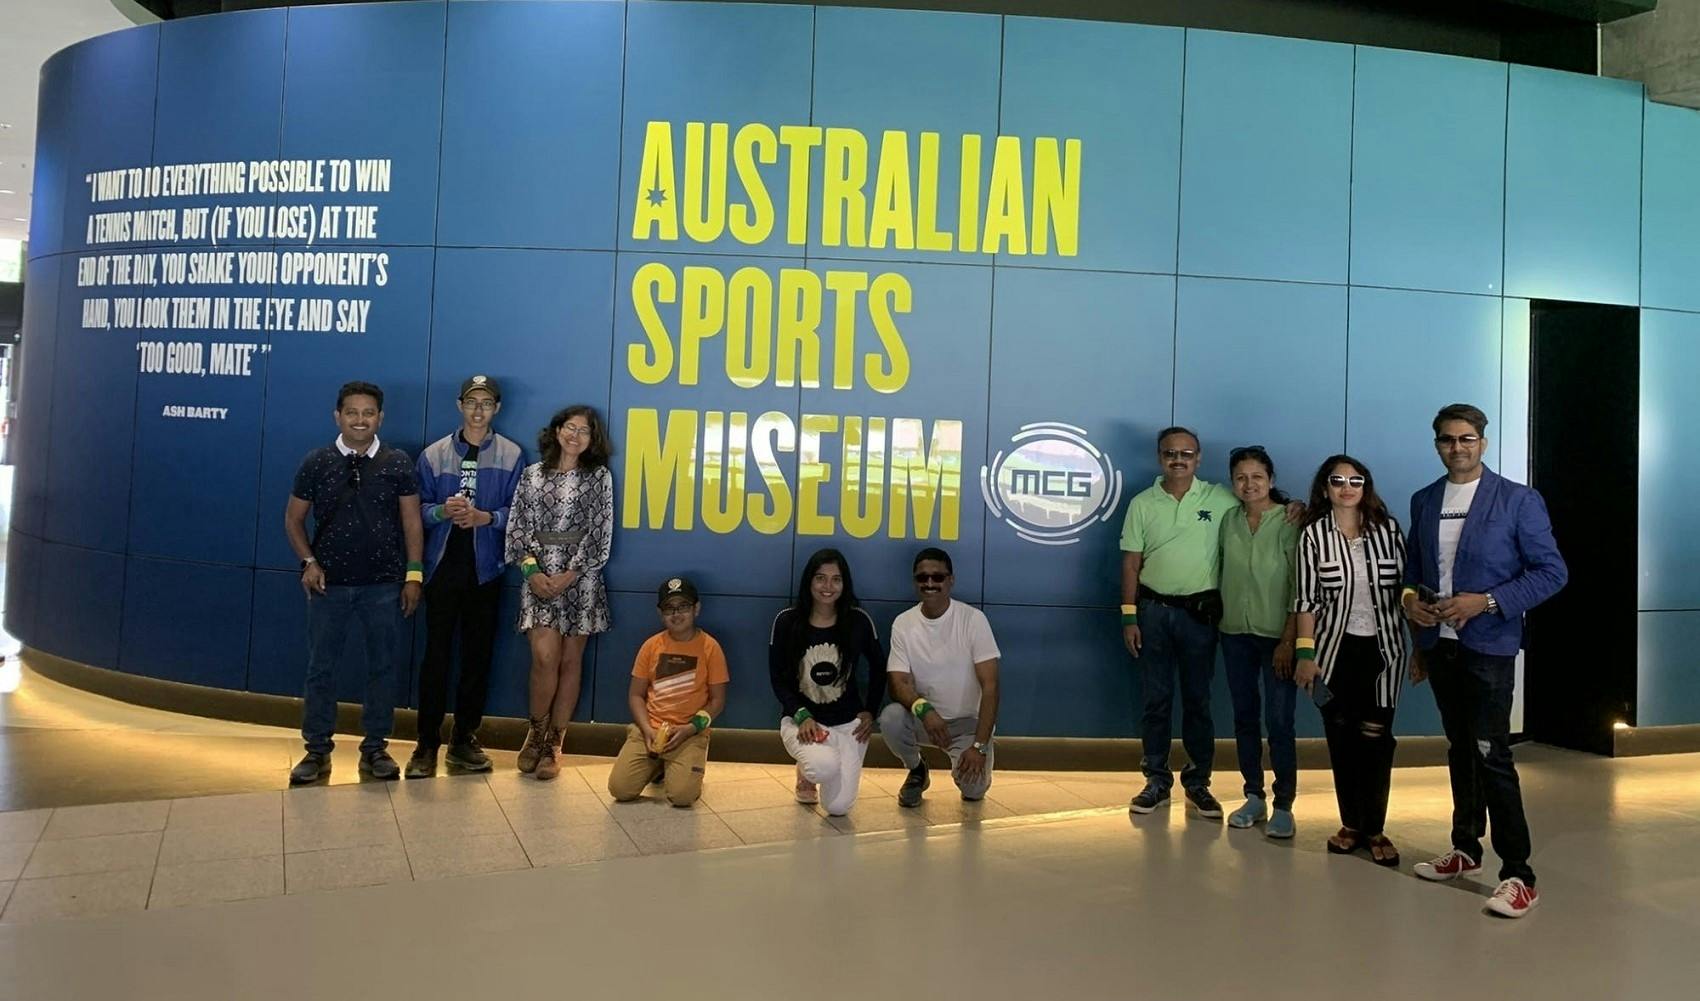 Zwiedzanie dzielnicy sportowej w Melbourne i Australijskie Muzeum Sportu